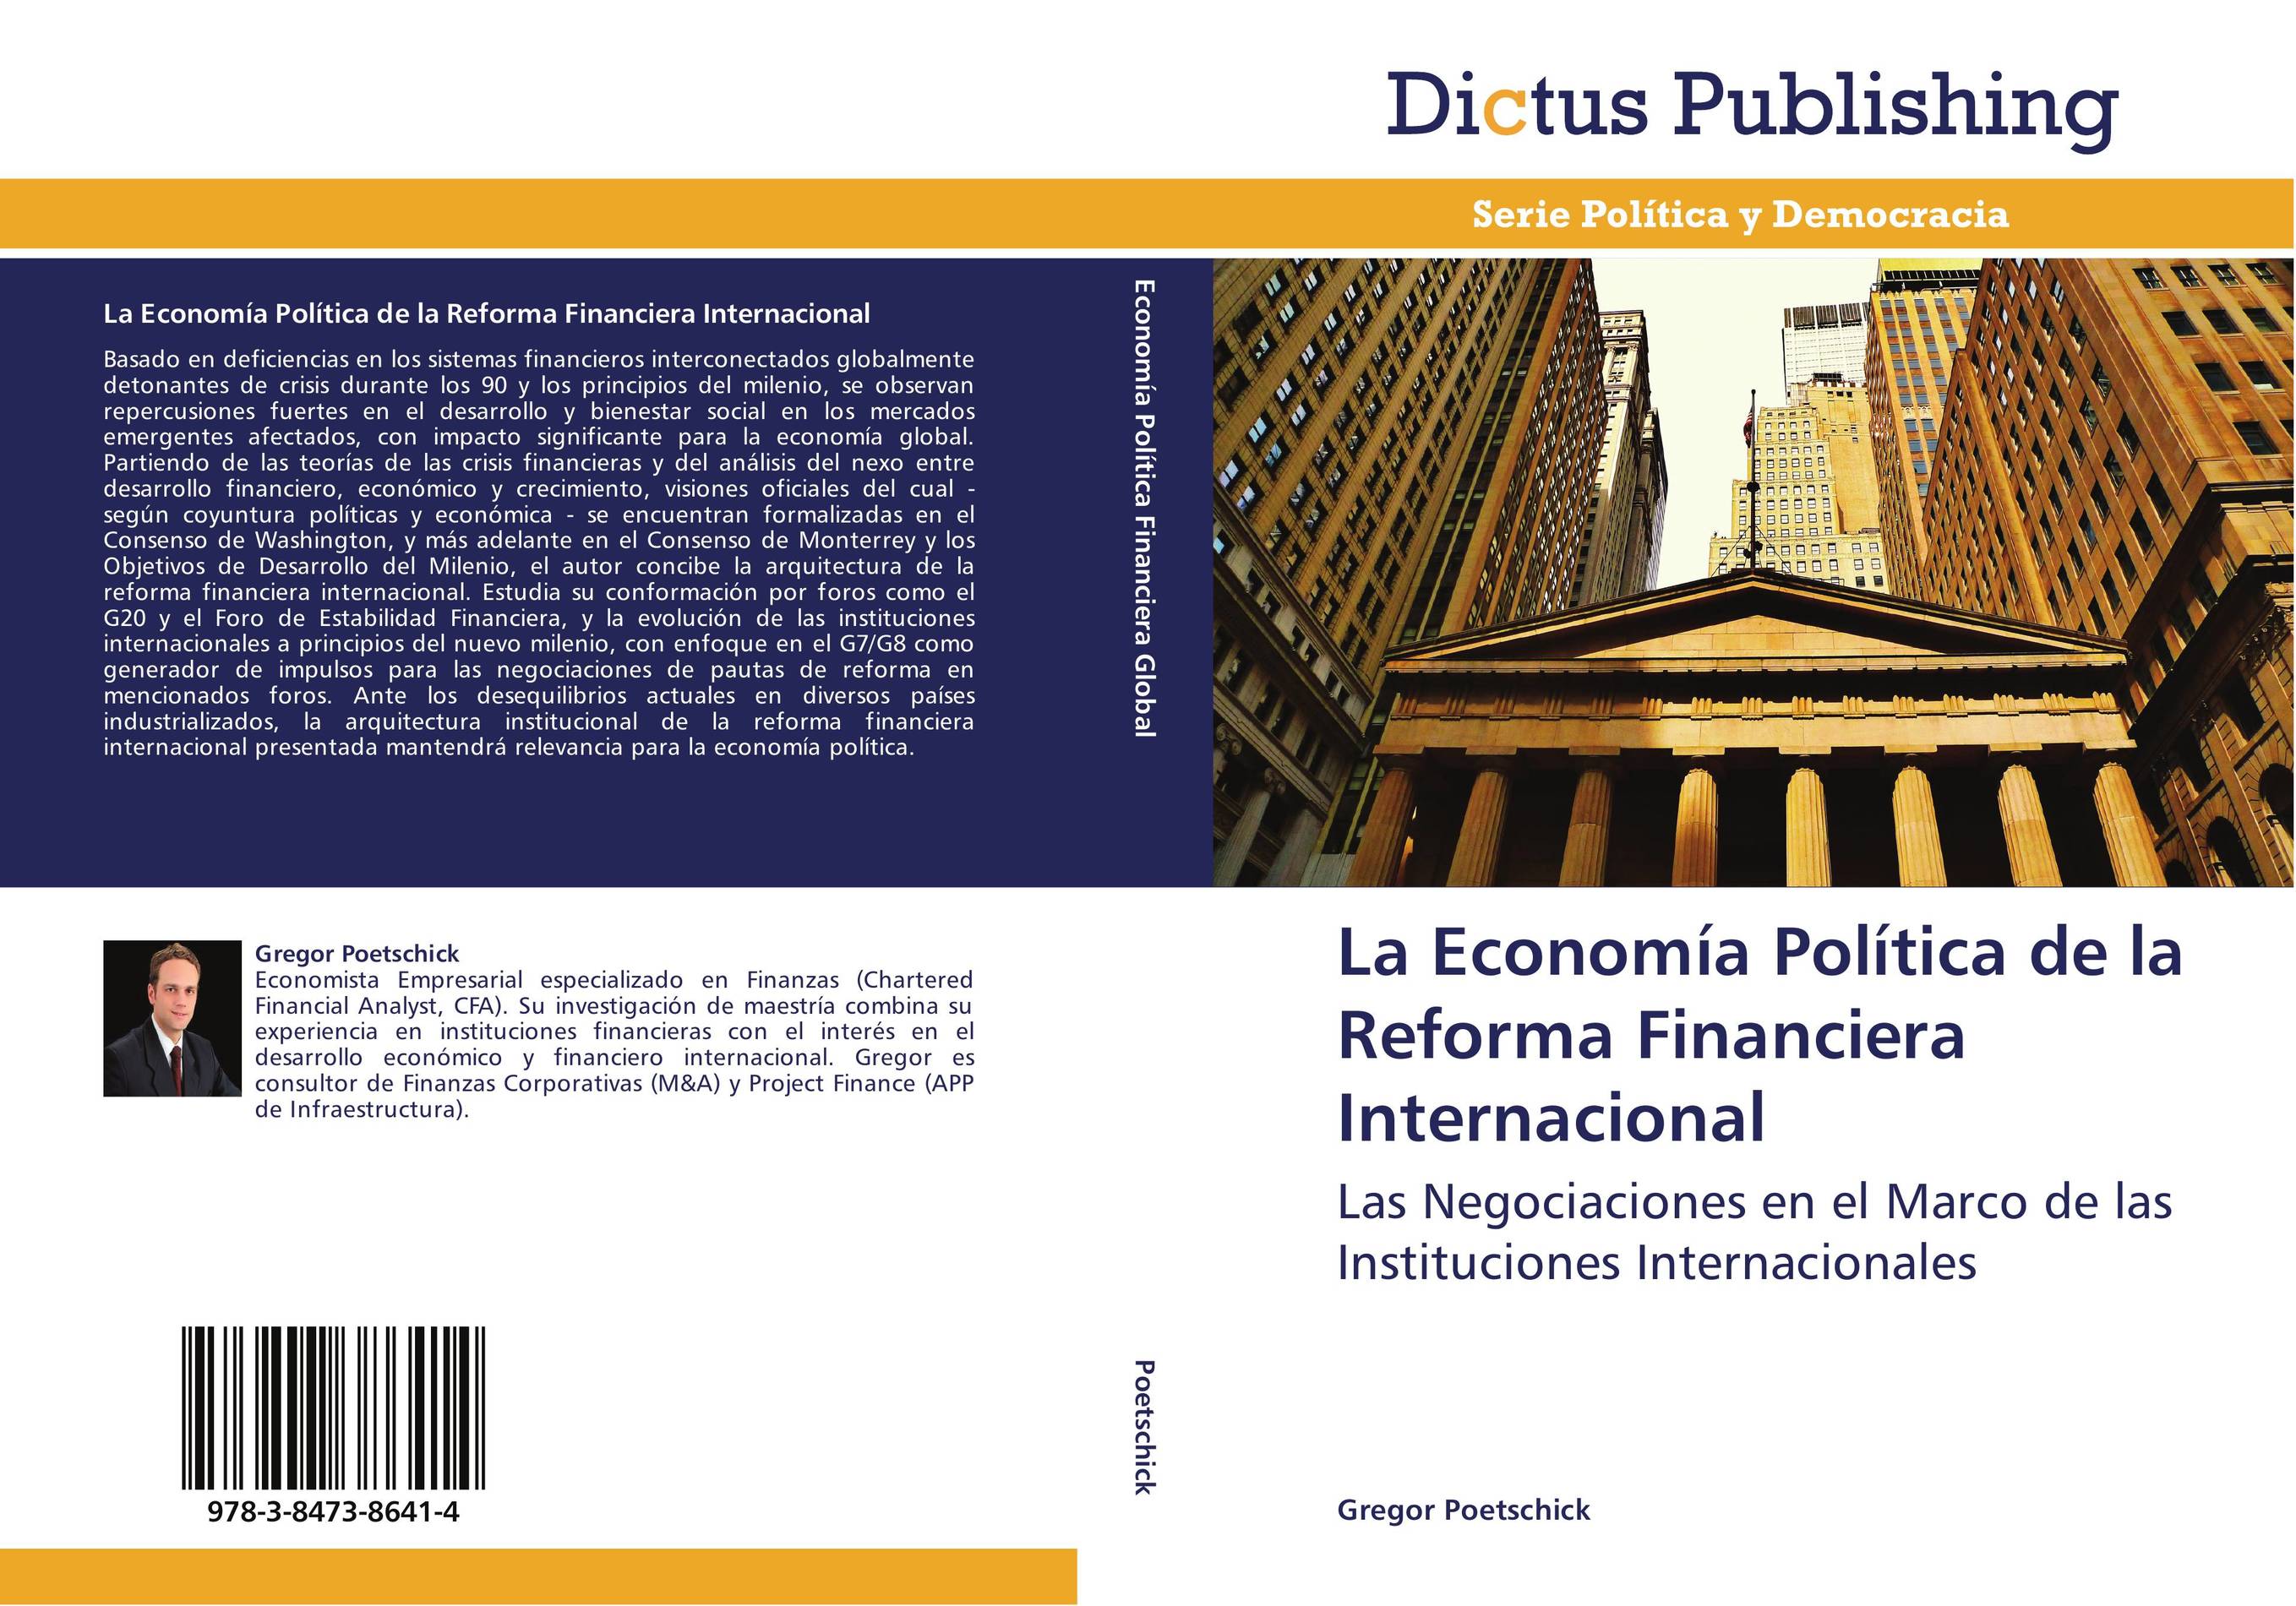 La Economía Política de la Reforma Financiera Internacional